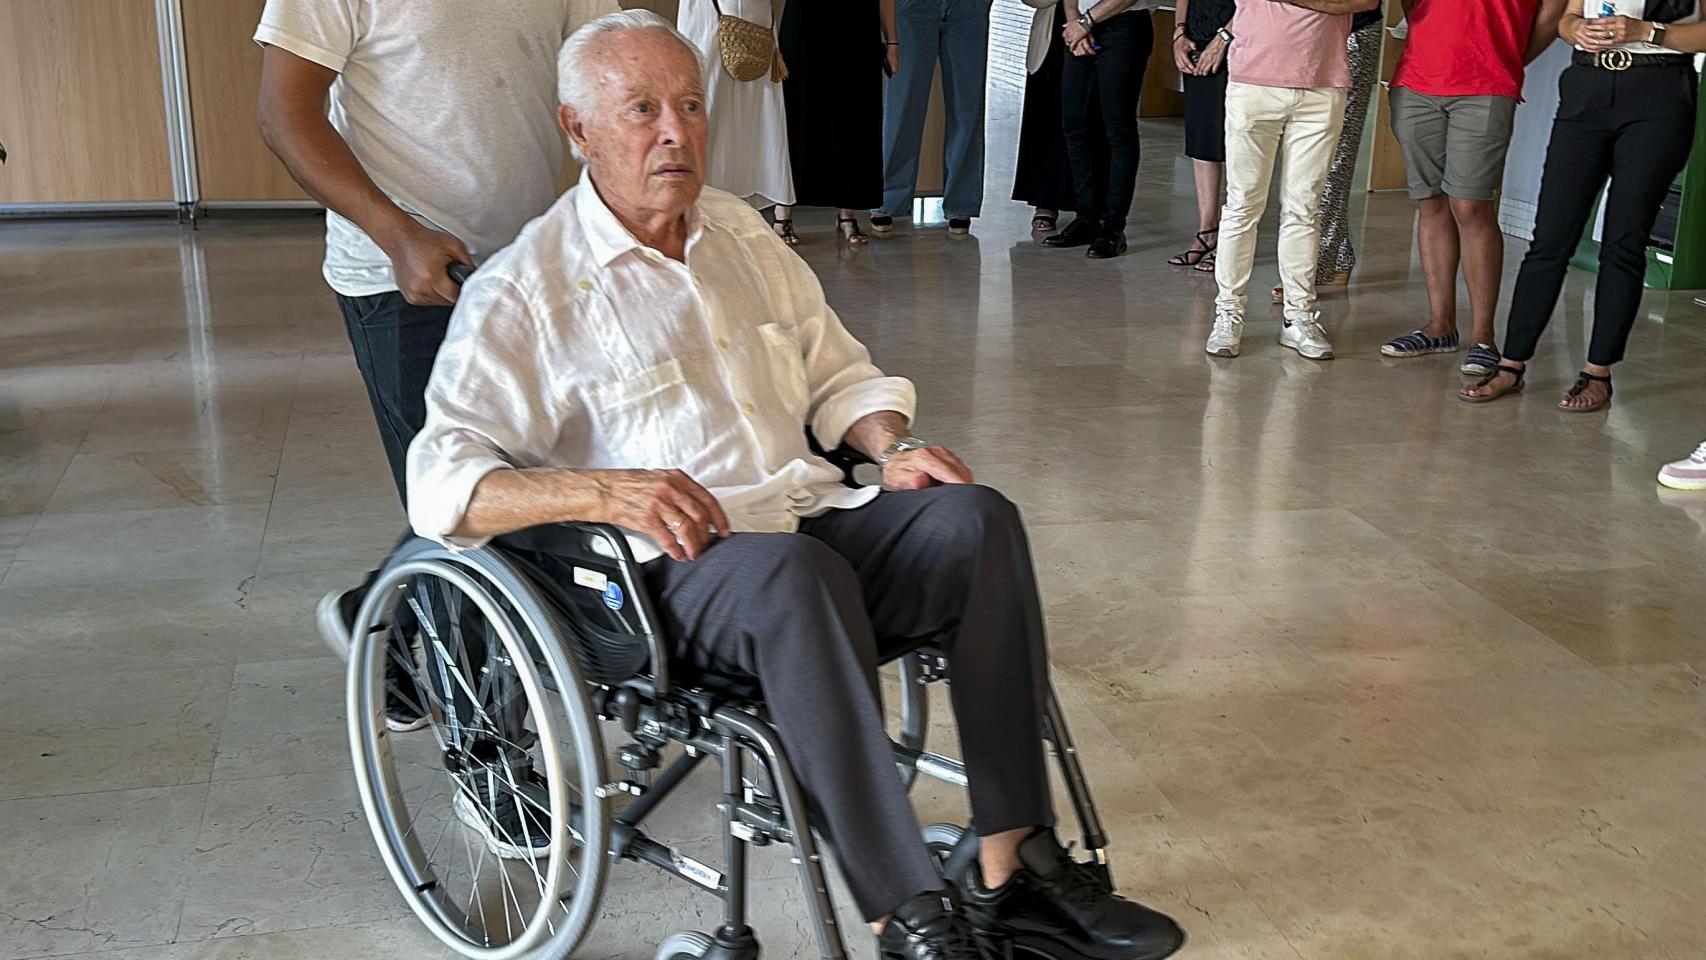 El diestro Curro Romero asiste al funeral de Paco Camino en silla de ruedas.